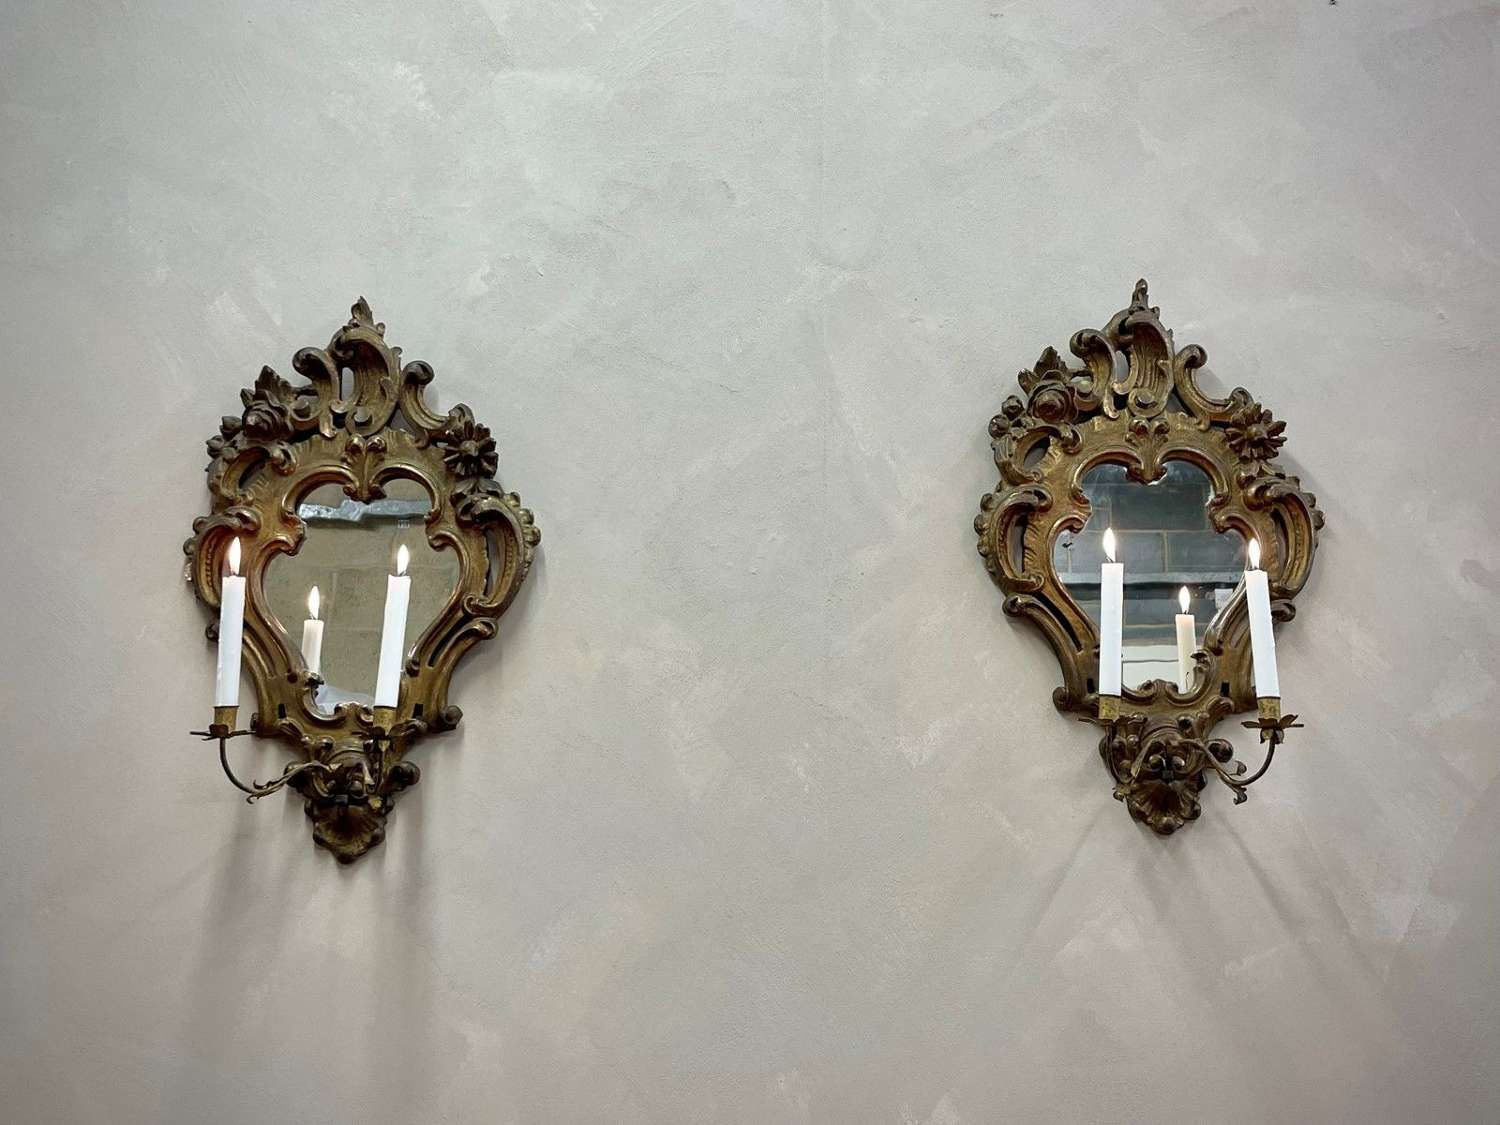 Venetian Mirrors & Sconces